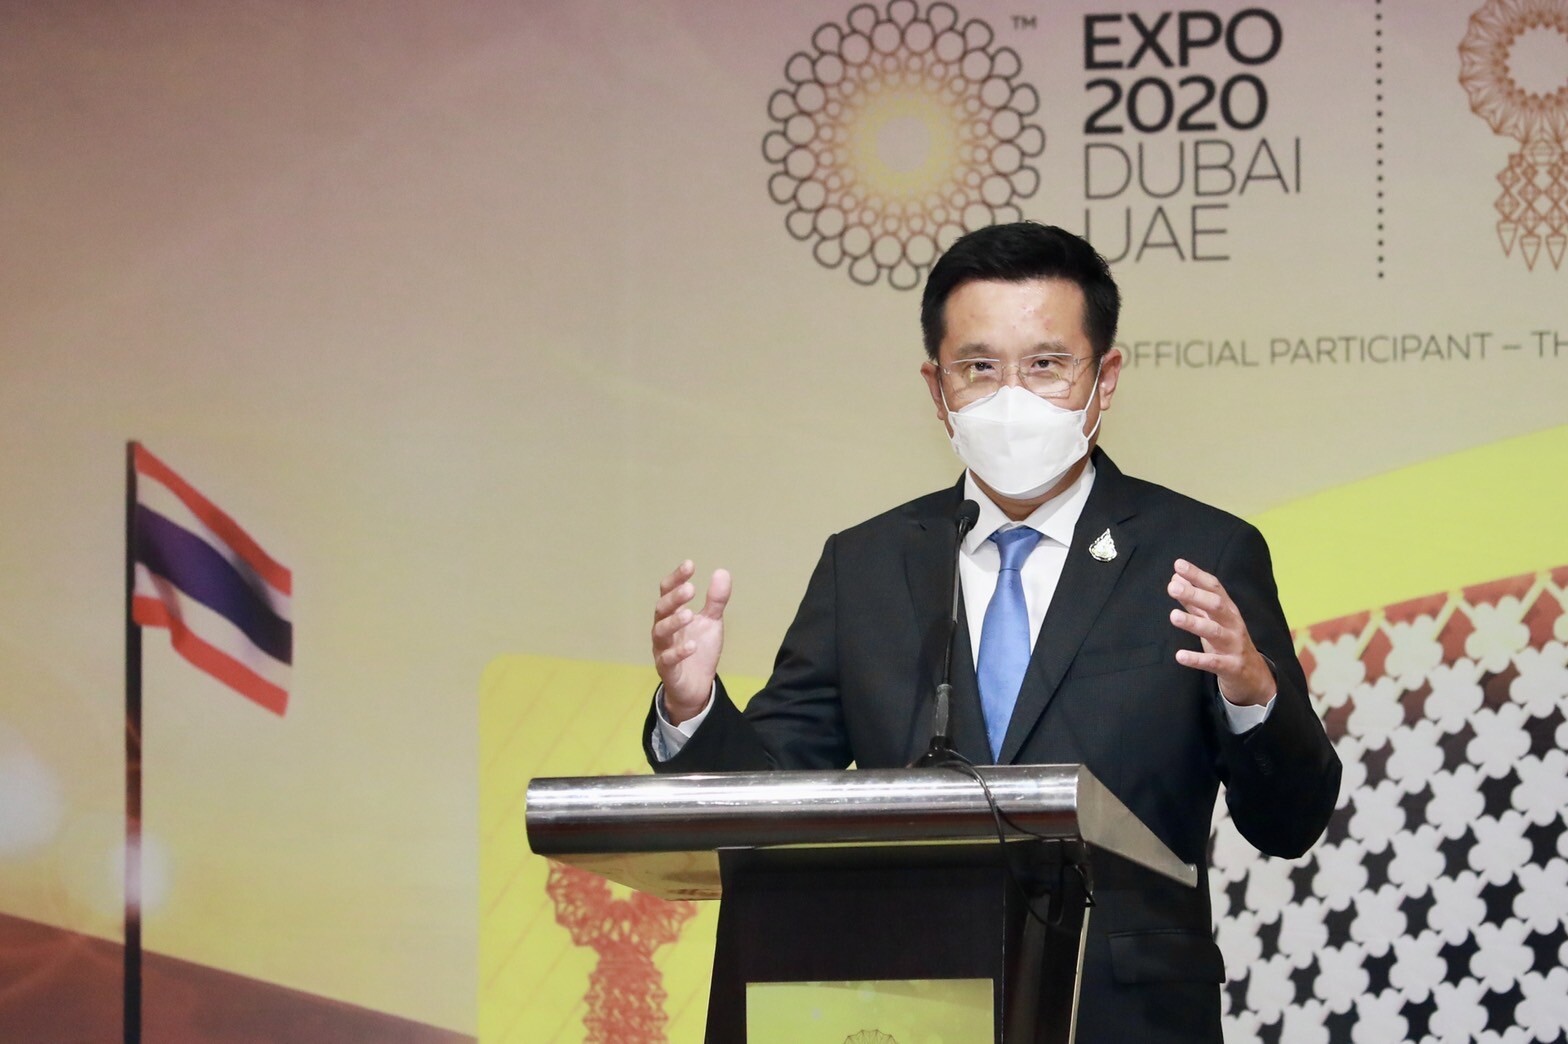 "ชัยวุฒิ" ปลื้มผลงานไทยชิงความนิยมอันดับ 4  ใน World Expo 2020 Dubai